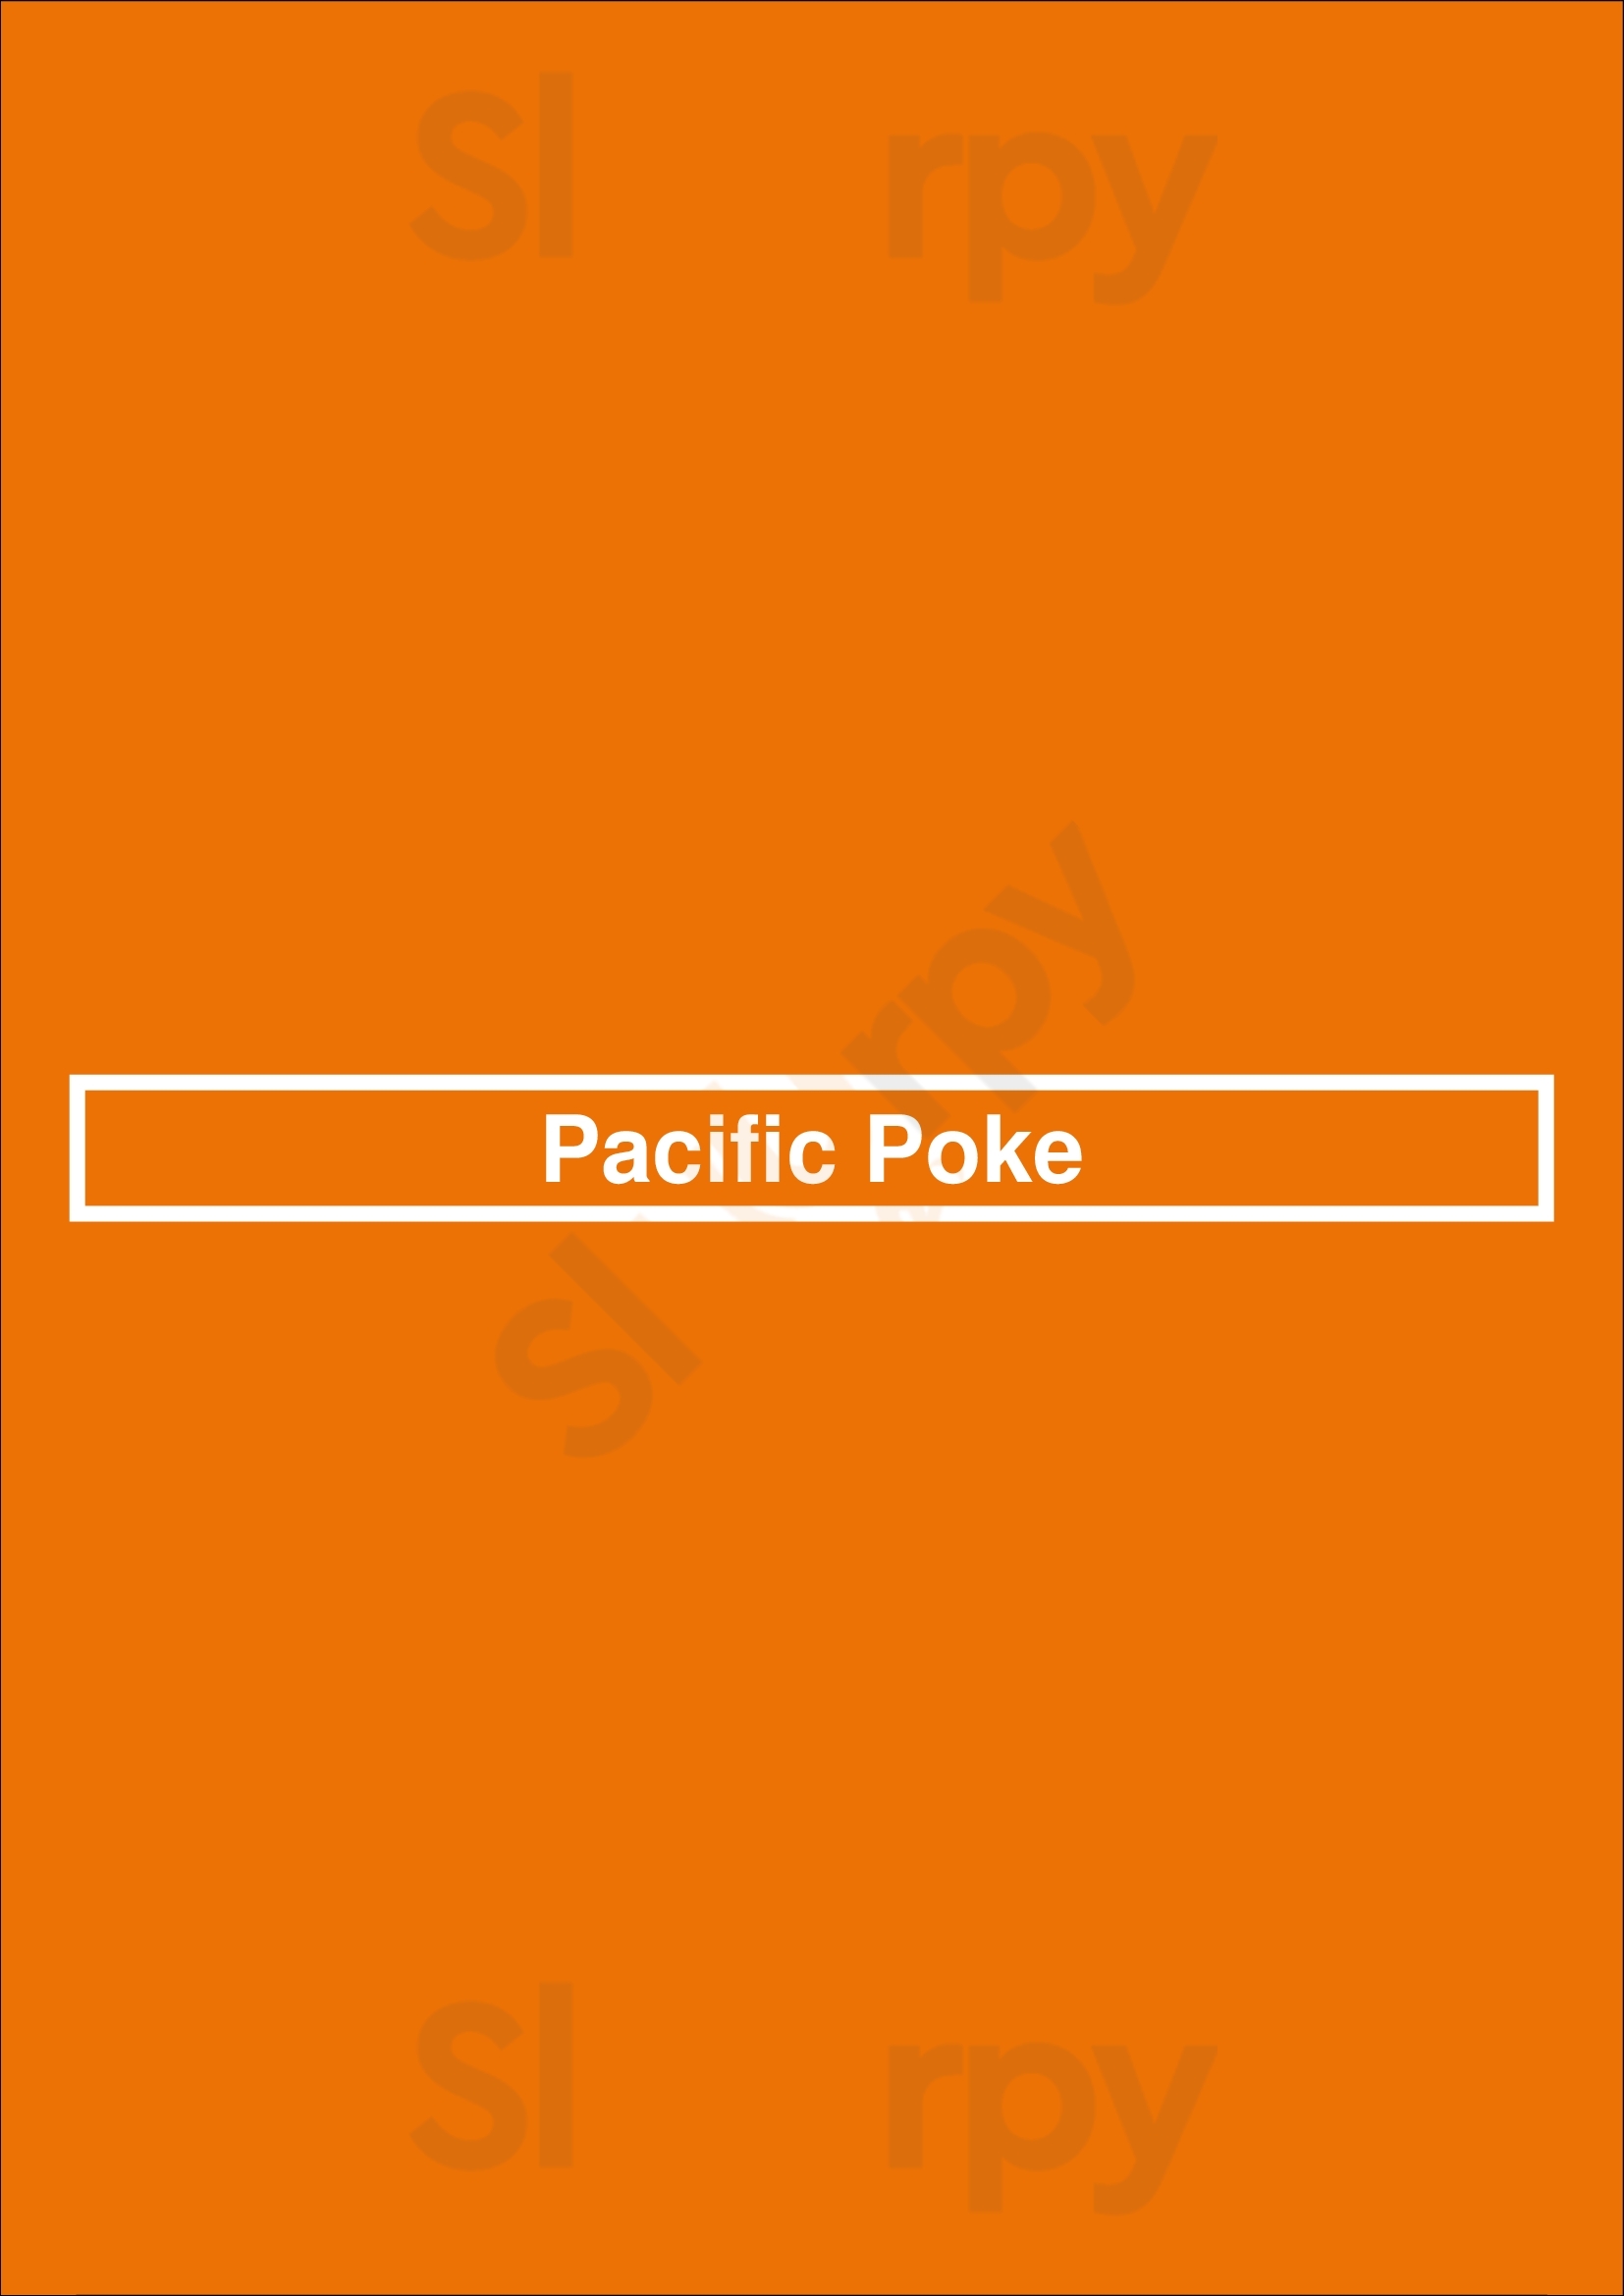 Pacific Poke Vancouver Menu - 1